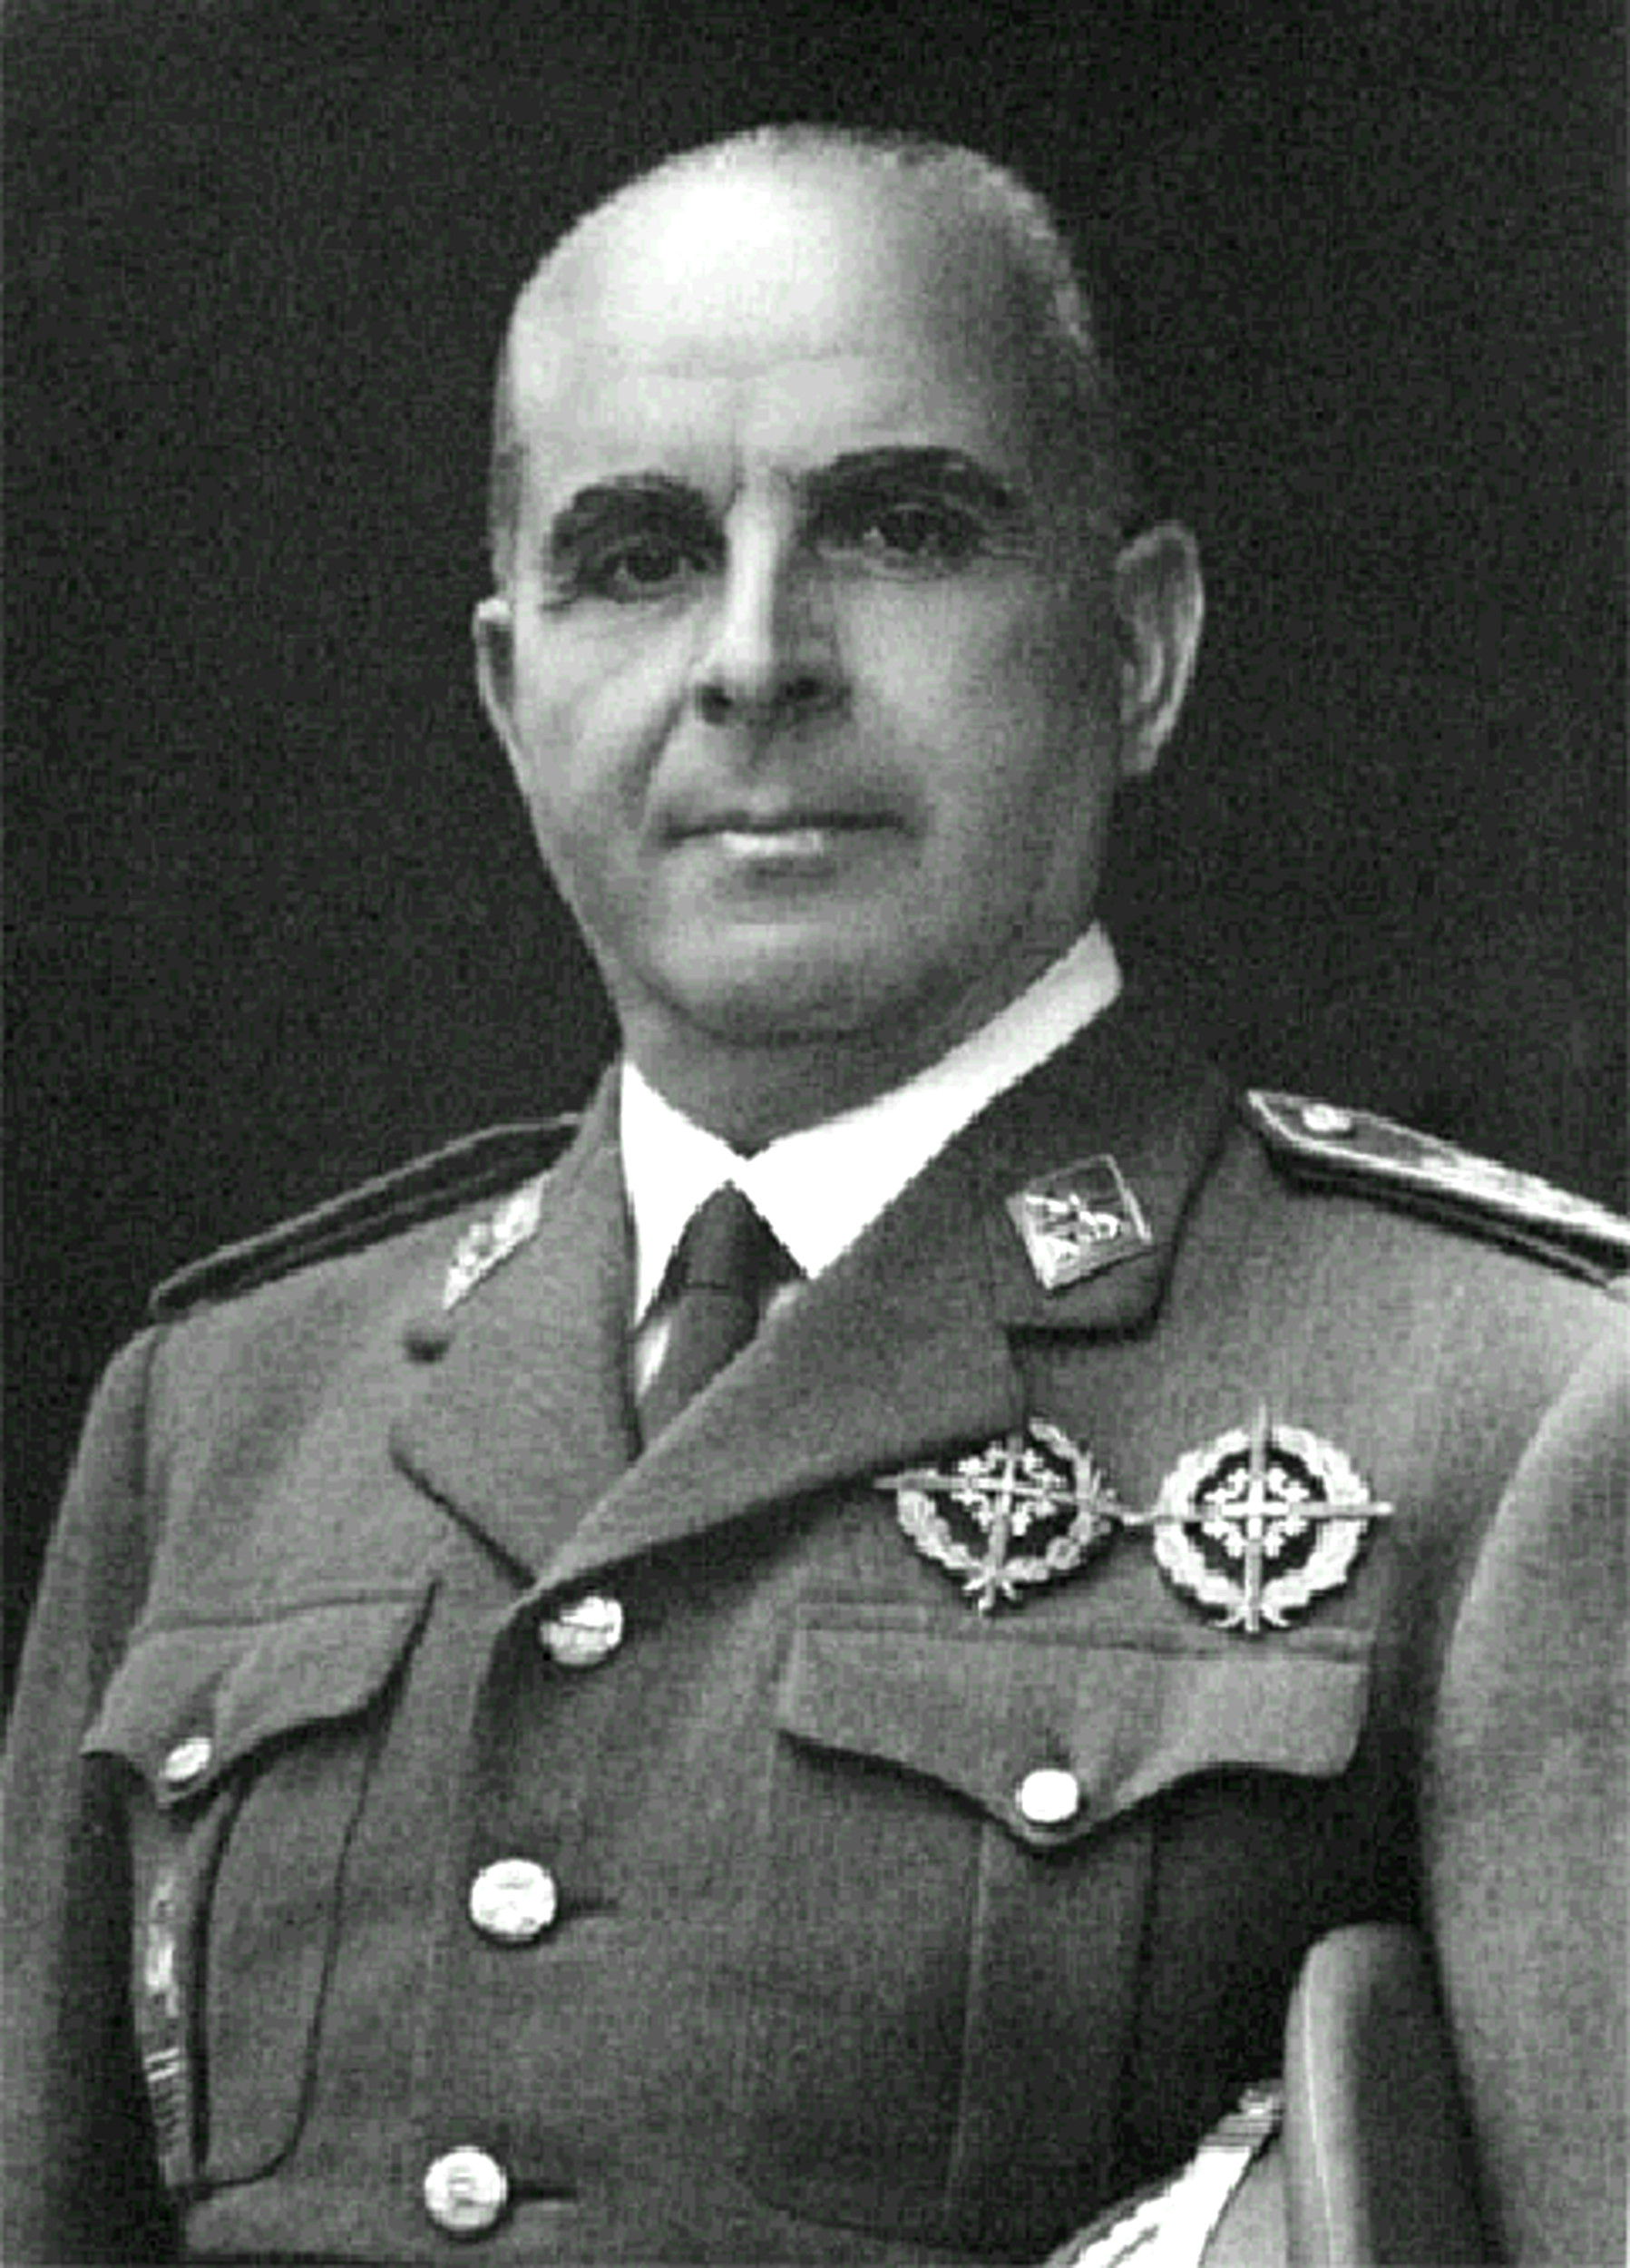 José Enrique Varela Iglesias